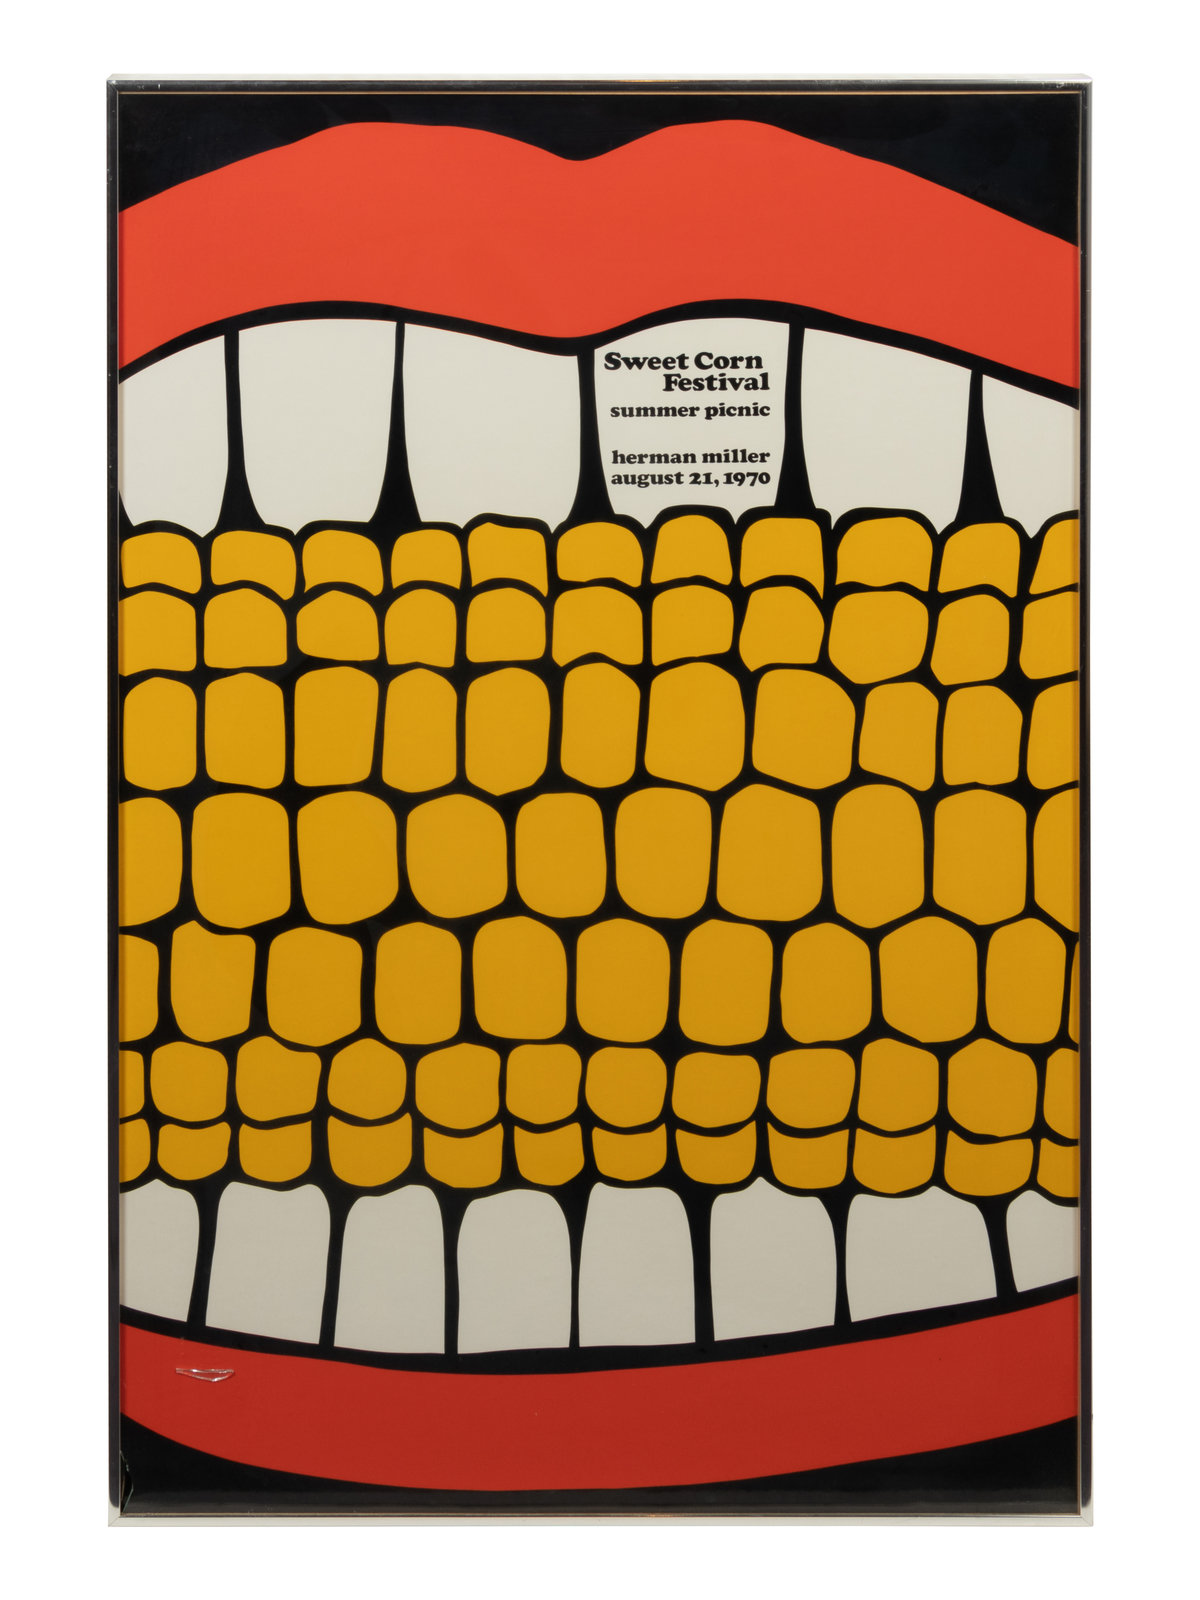 Sweet Corn Festival Summer Picnic, Herman Miller